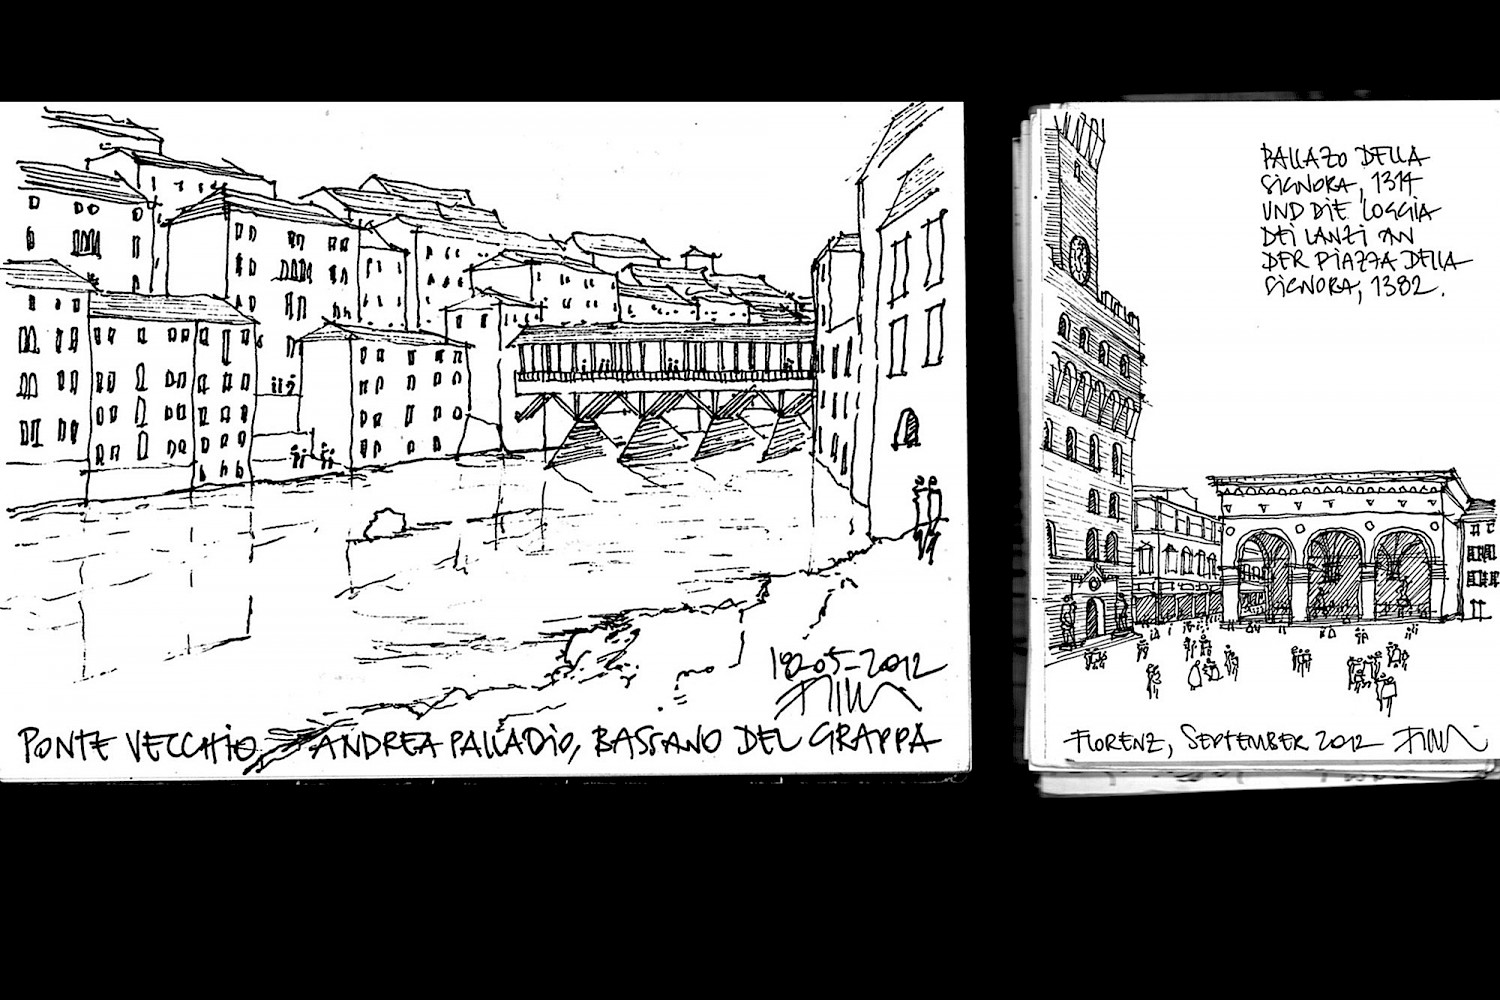 Ponte Vecchio, Andrea Palladio, Bassano del Grappa, 1569
Loggia dei Lanzi und Piazza della Signora, Florenz, 1382